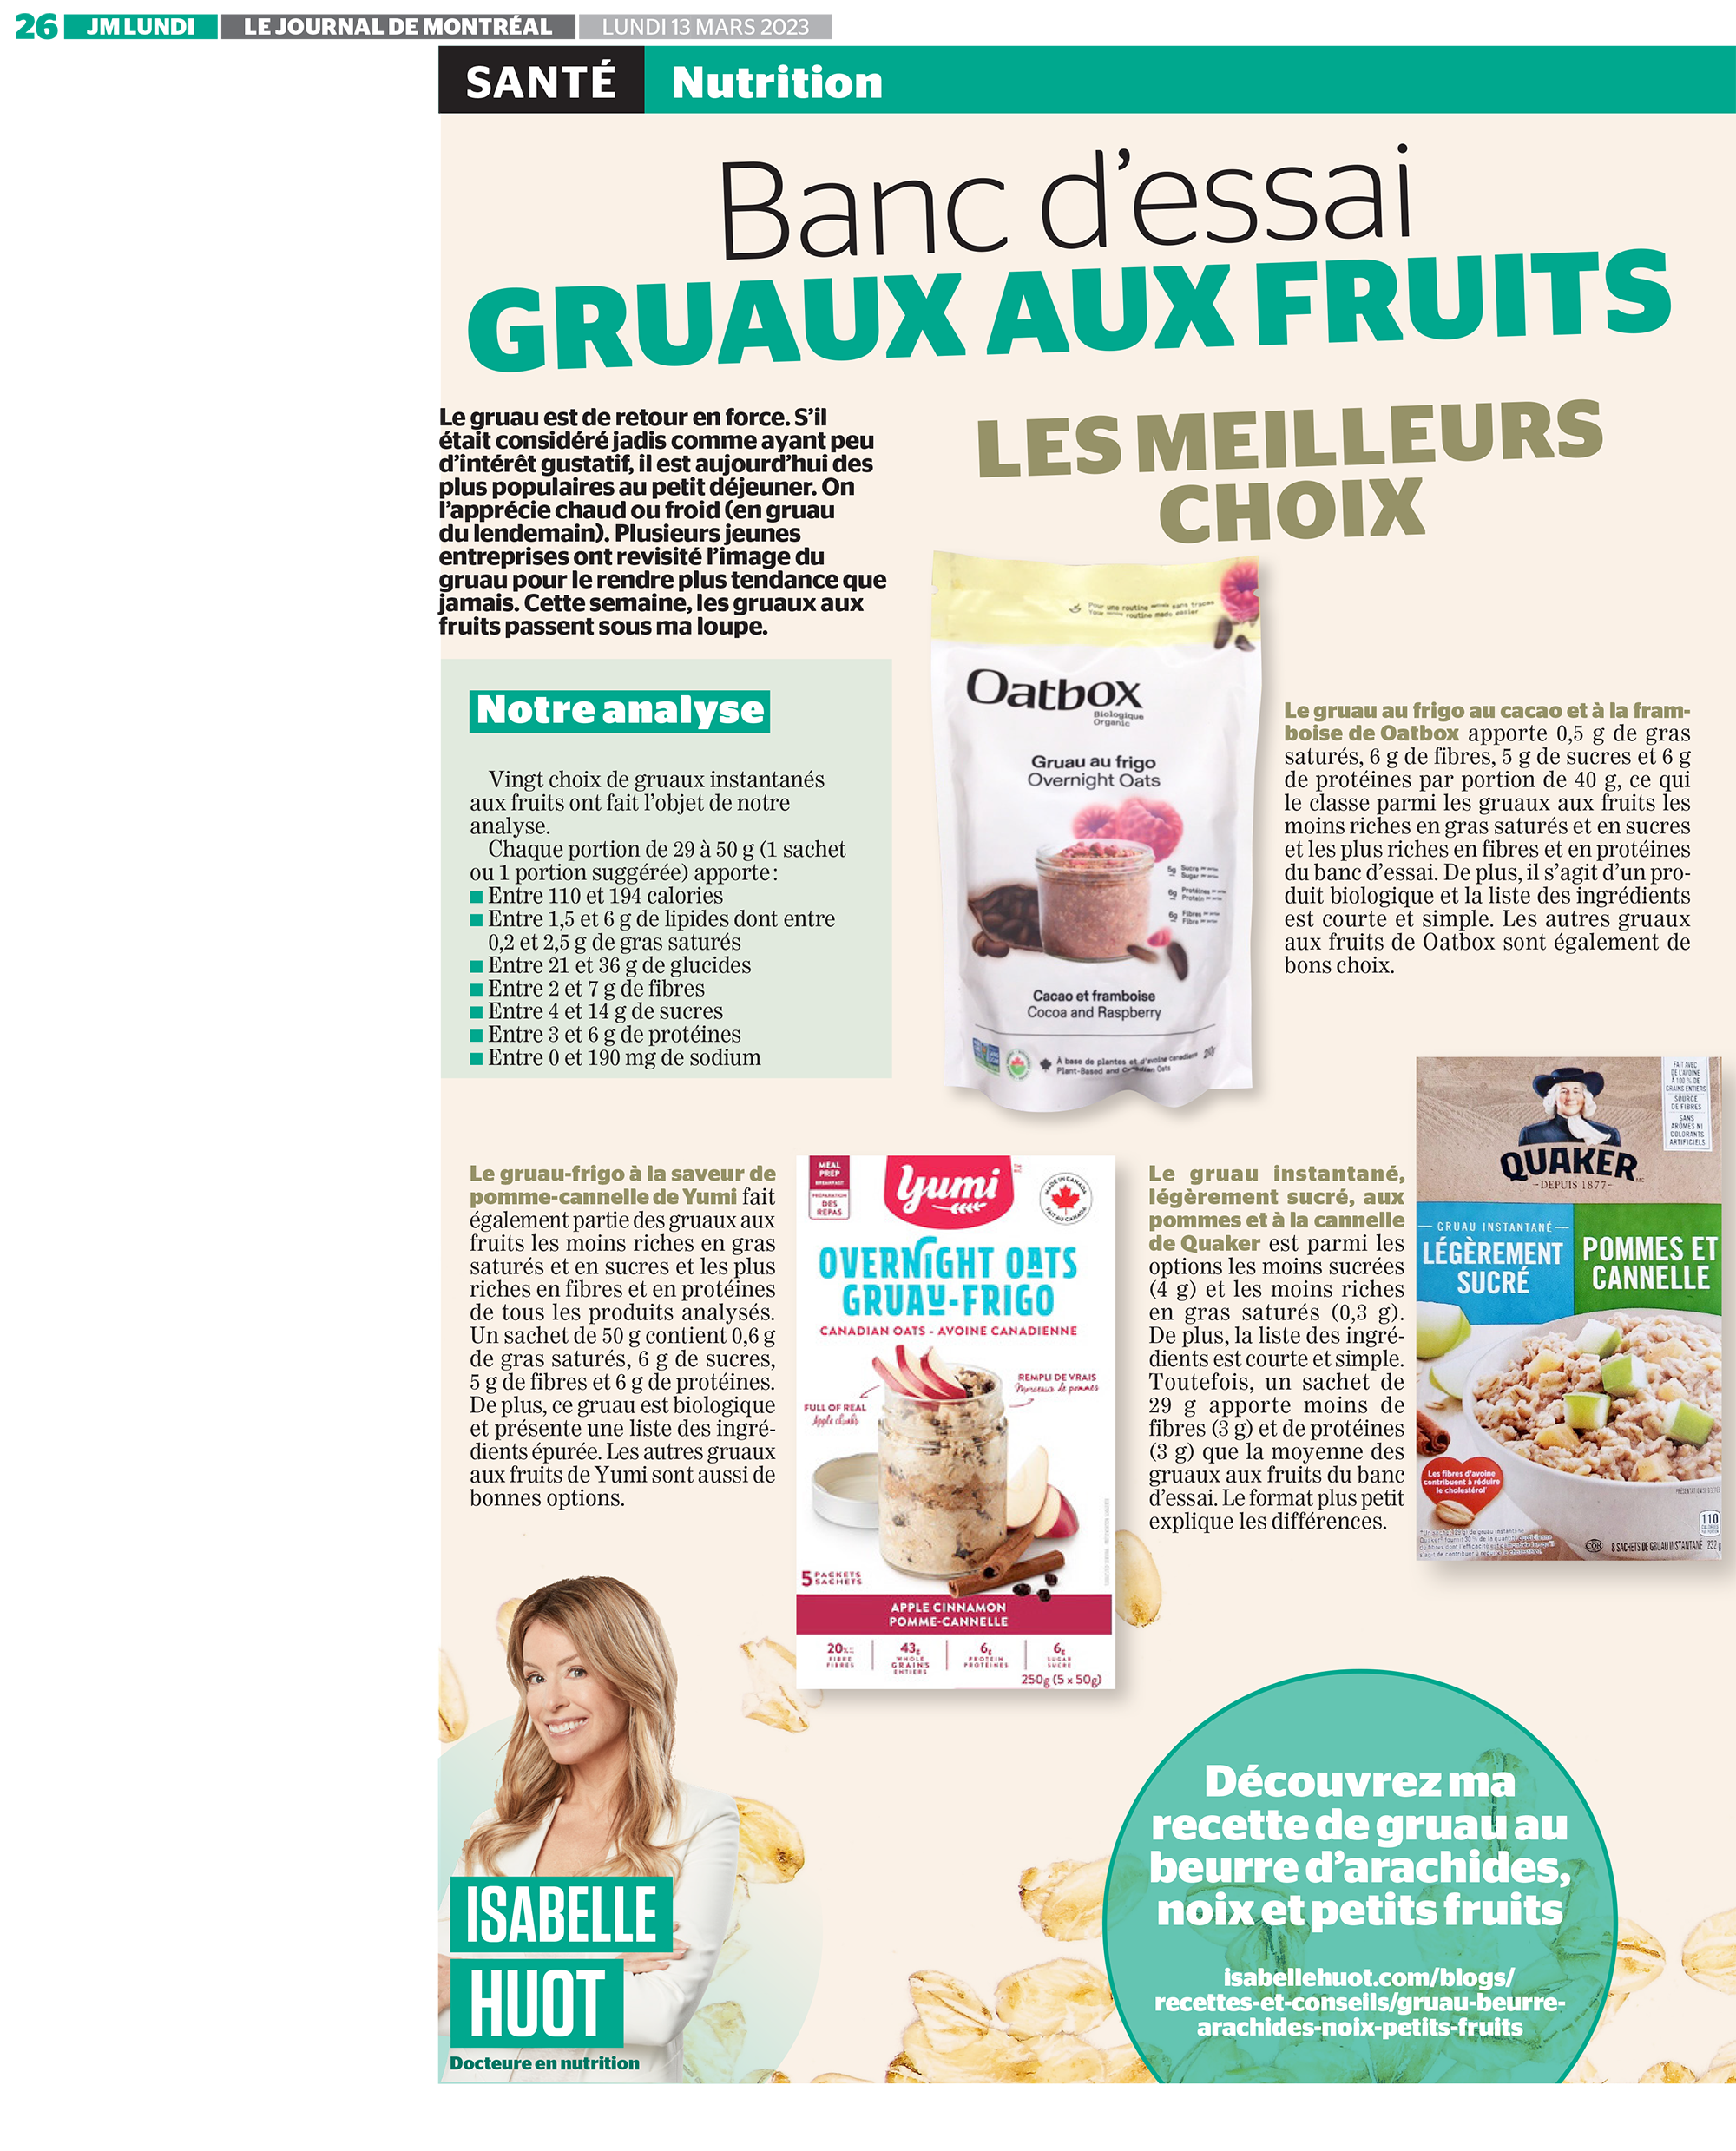 Au banc d'essai cette semaine, les gruaux aux fruits! Une analyse d'Isabelle Huot Docteure en nutrition pour le Journal de Montréal.